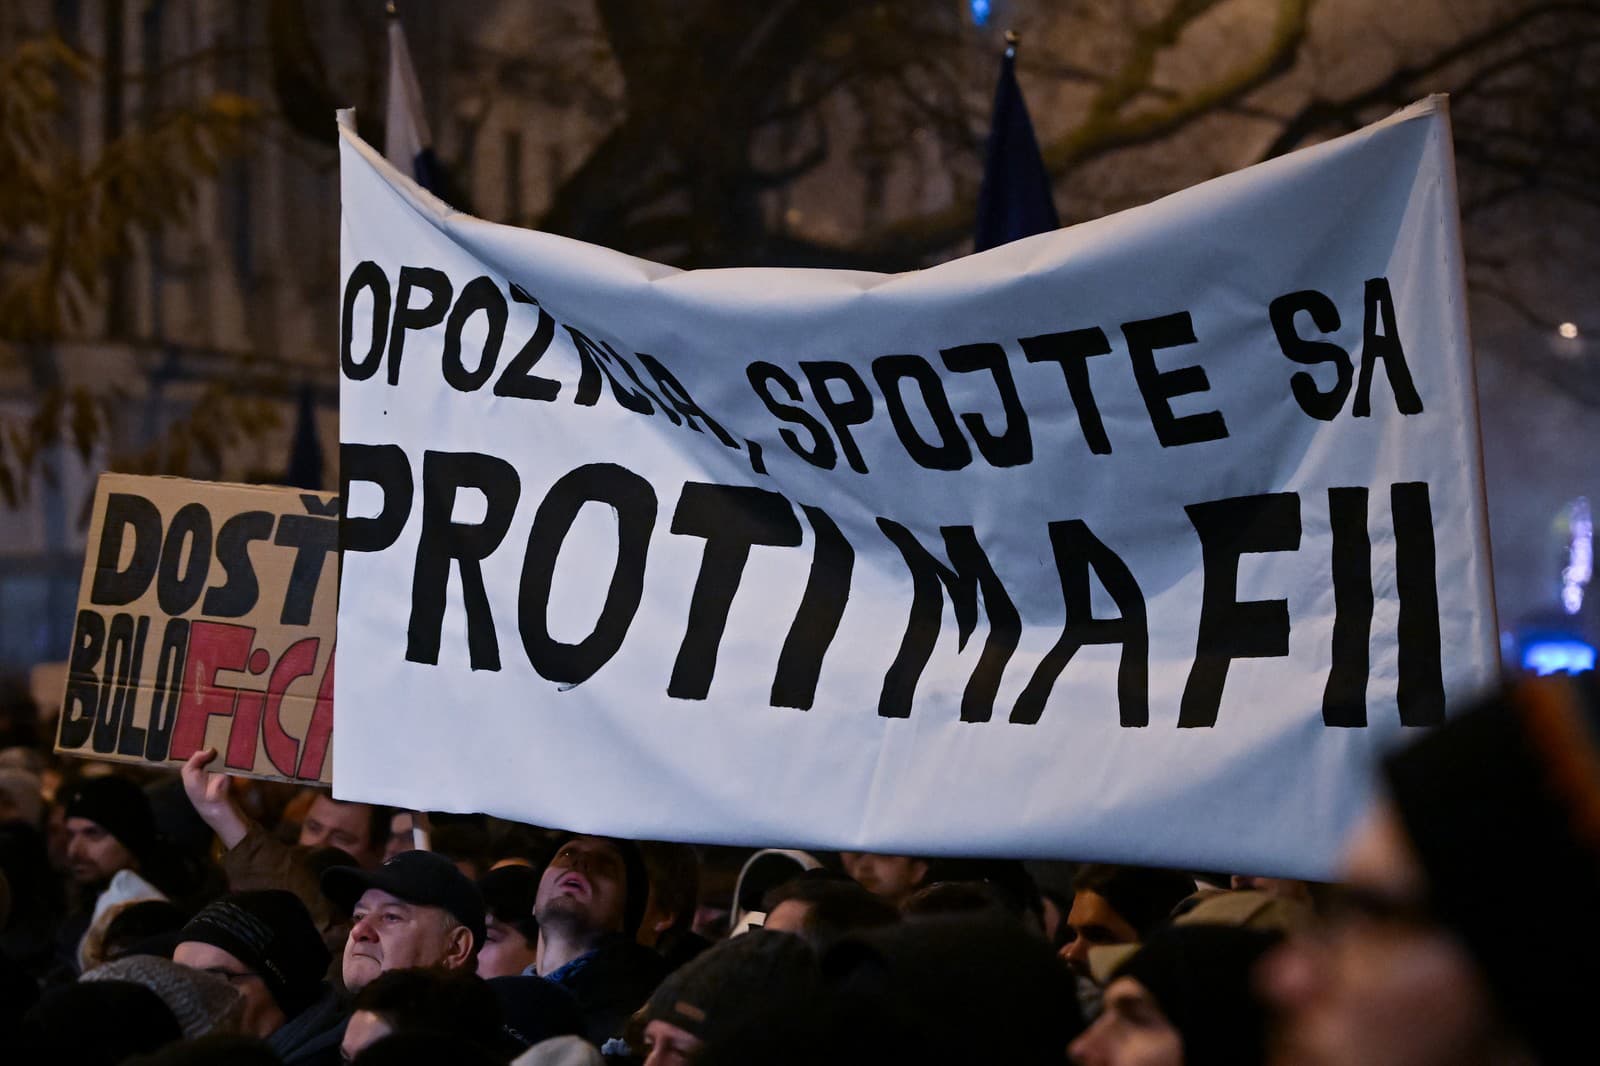 Protestné zhromaždenie SaS, PS a KDH na Námestí SNP v Bratislave 